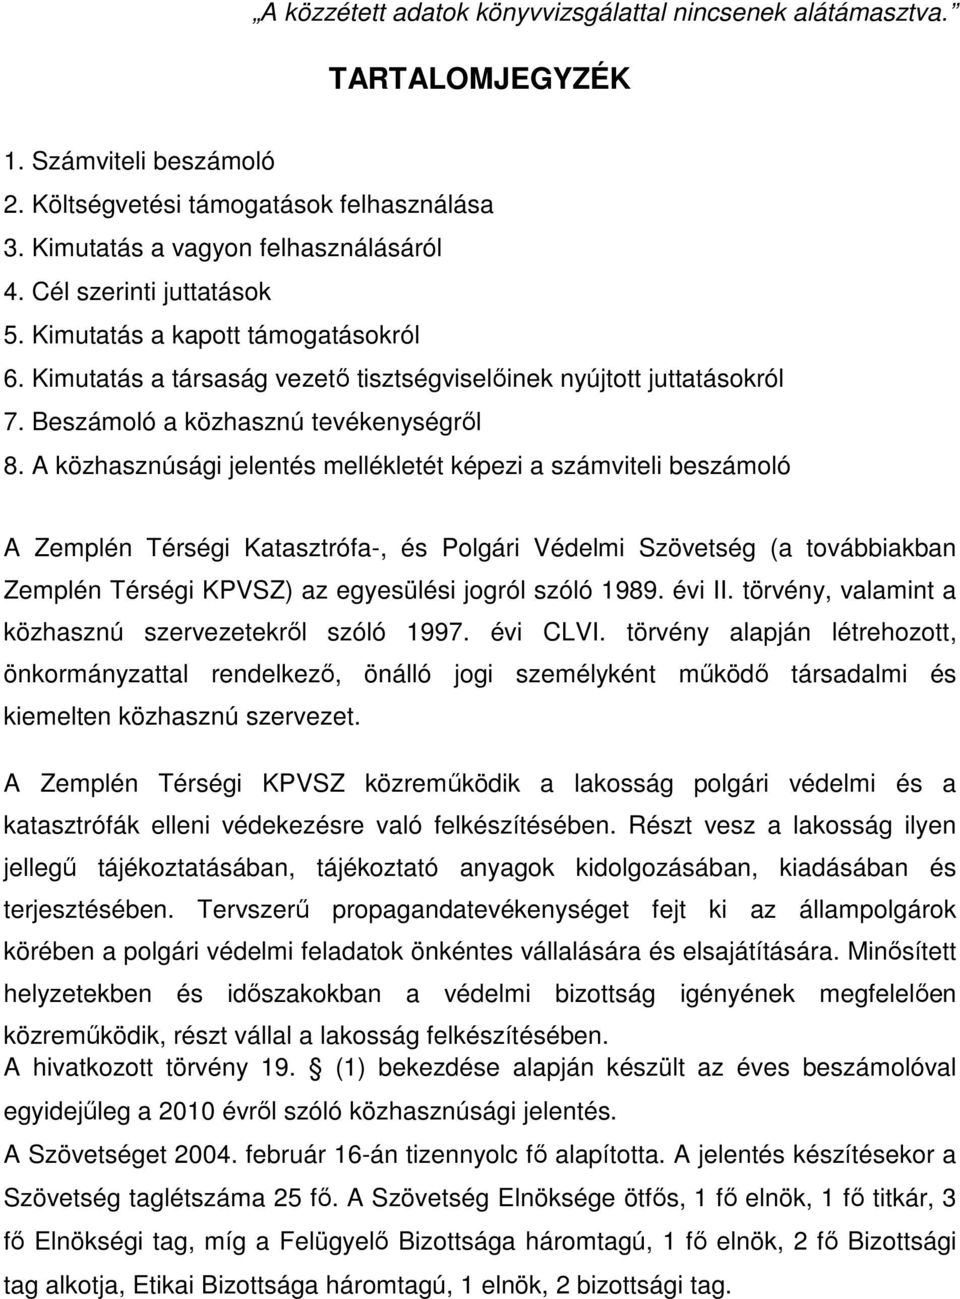 A közhasznúsági jelentés mellékletét képezi a számviteli beszámoló A Zemplén Térségi Katasztrófa-, és Polgári Védelmi Szövetség (a továbbiakban Zemplén Térségi KPVSZ) az egyesülési jogról szóló 1989.